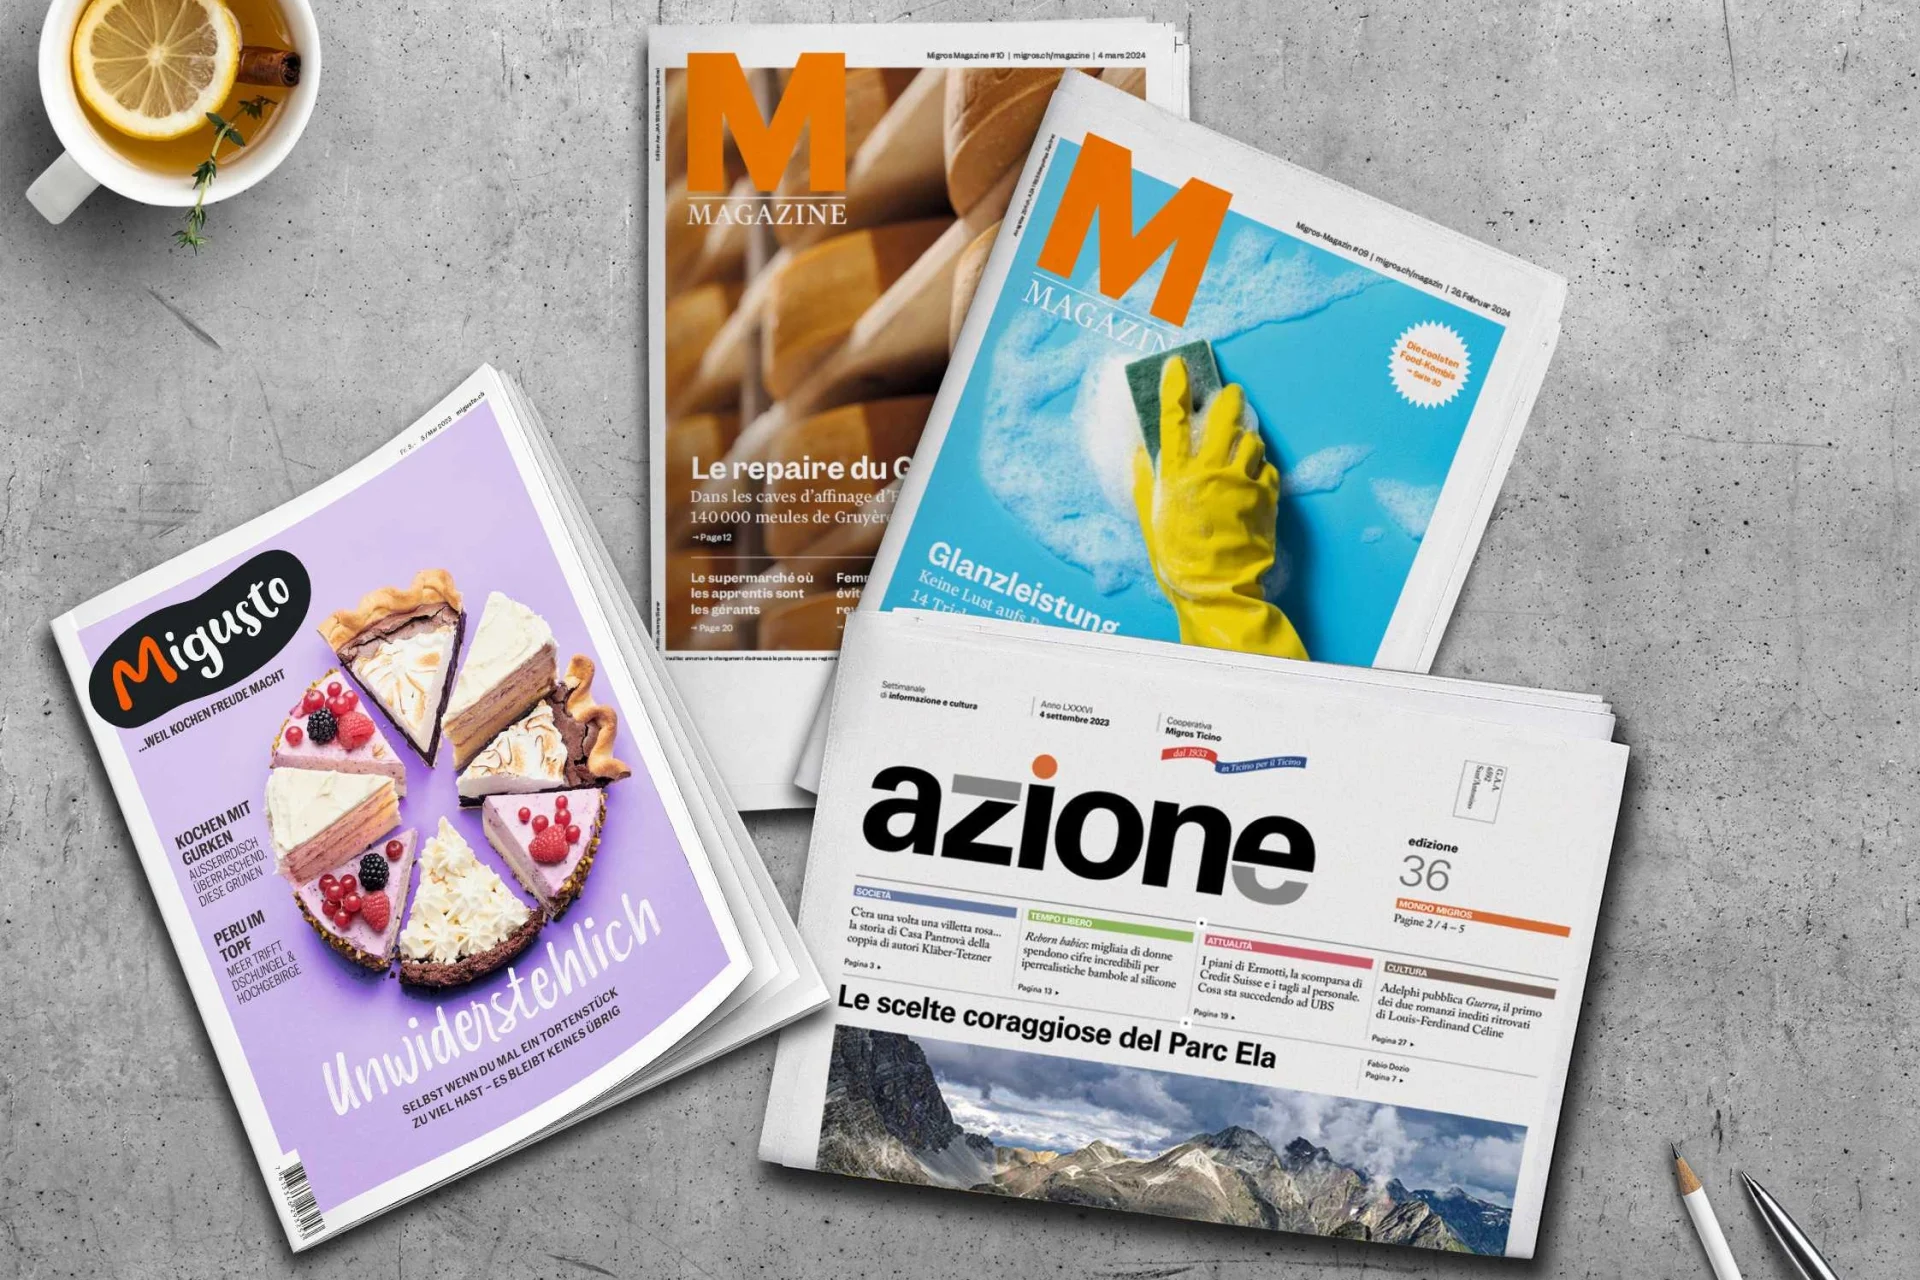 Des numéros de Migros Magazine, du magazine culinaire Migusto et d'Azione sont posés sur une table grise.